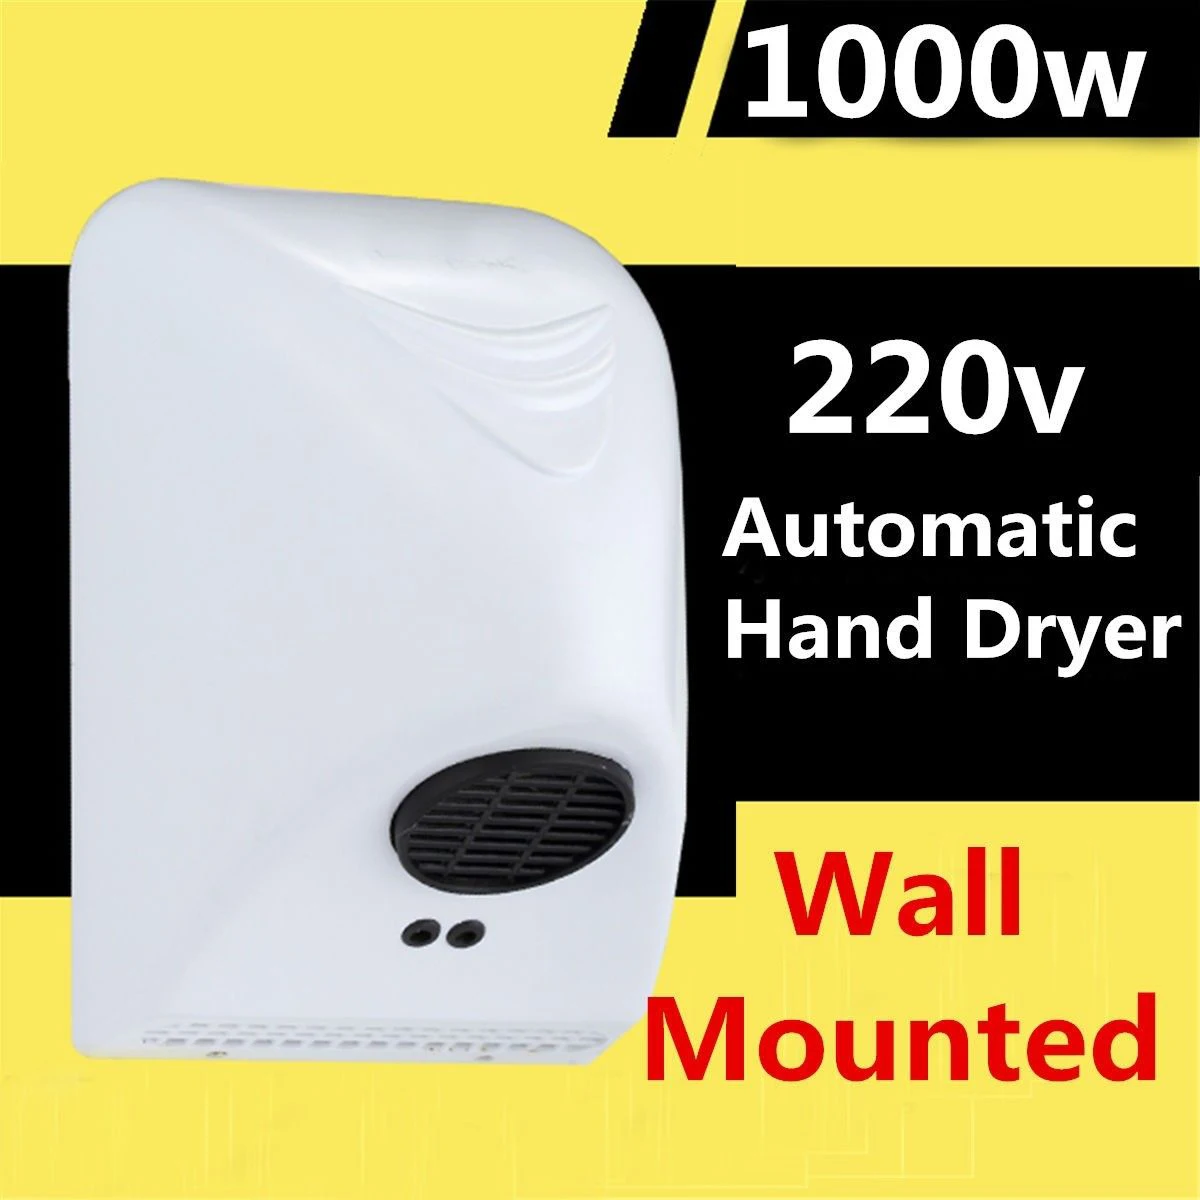 1000 Вт сушилка для рук бытовой фен для волос cушилка для рук для ванной комнаты Электрический Автоматическая Индукционная руки сушки устройства США Plug